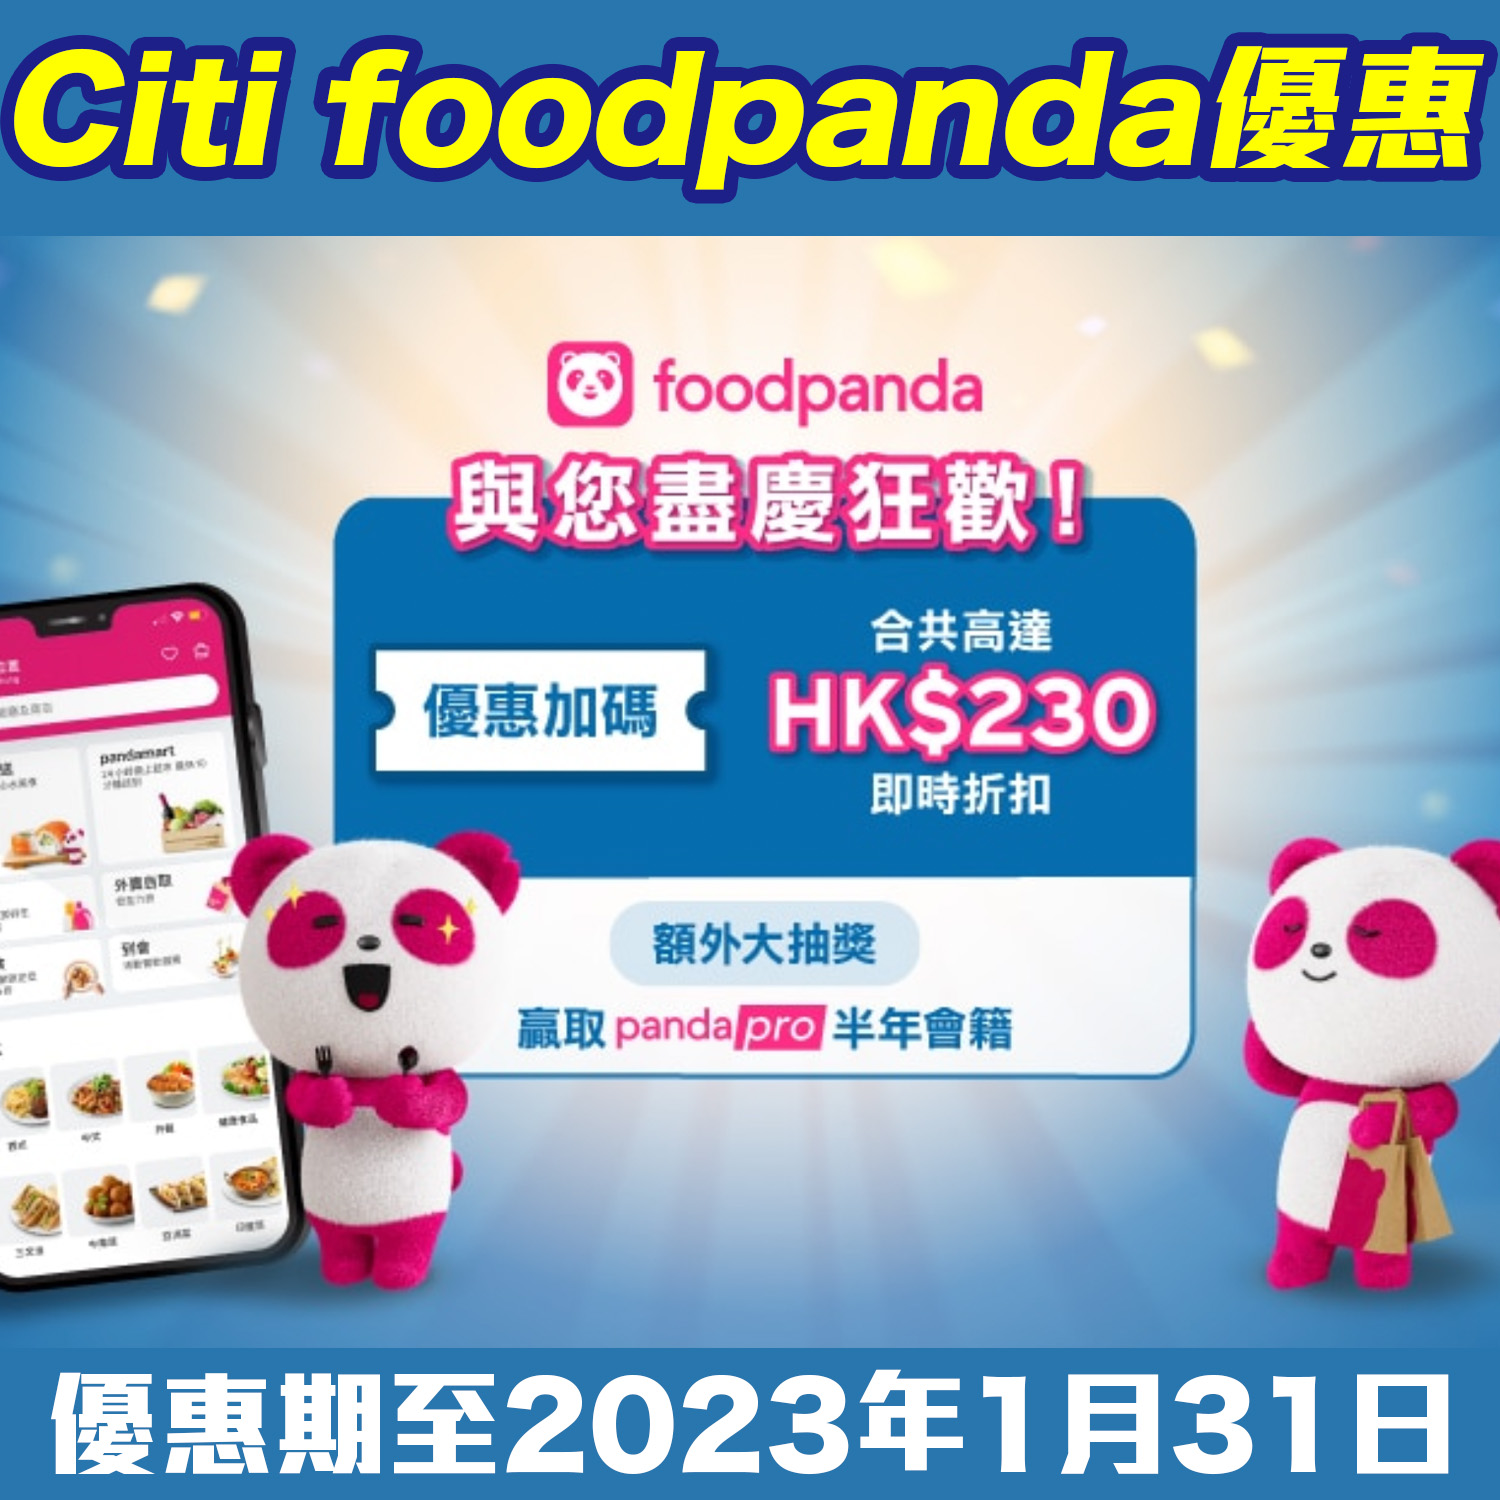 【Citi foodpanda優惠】用Citi信用卡喺foodpanda簽賬賺合共高達HK$230即時折扣